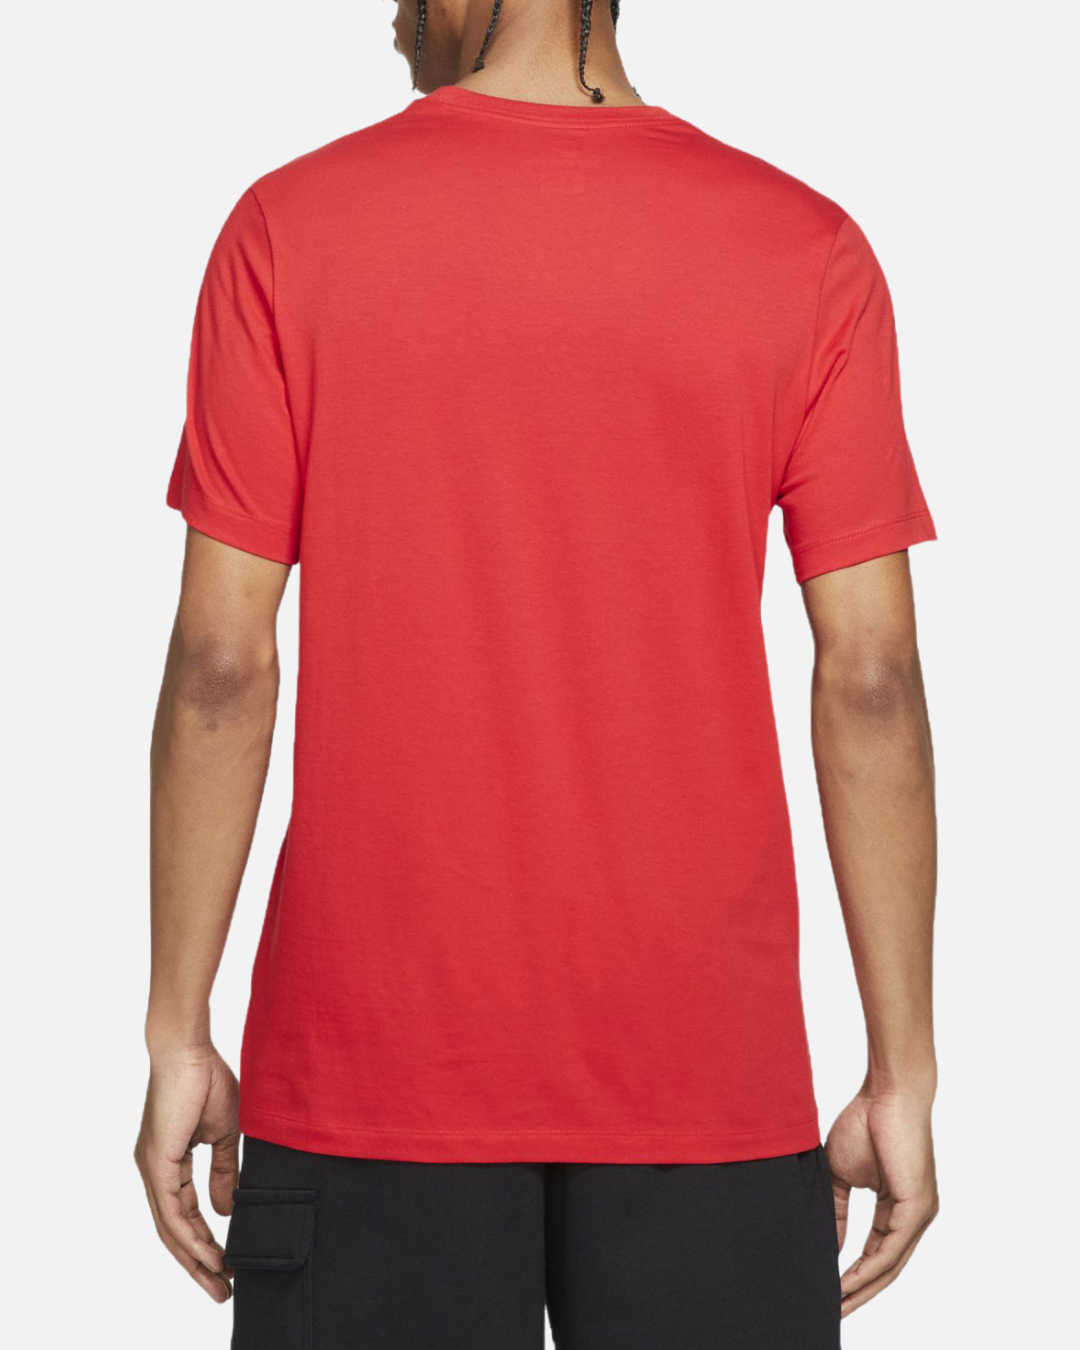 Nike Futura Icon T-Shirt - Red 